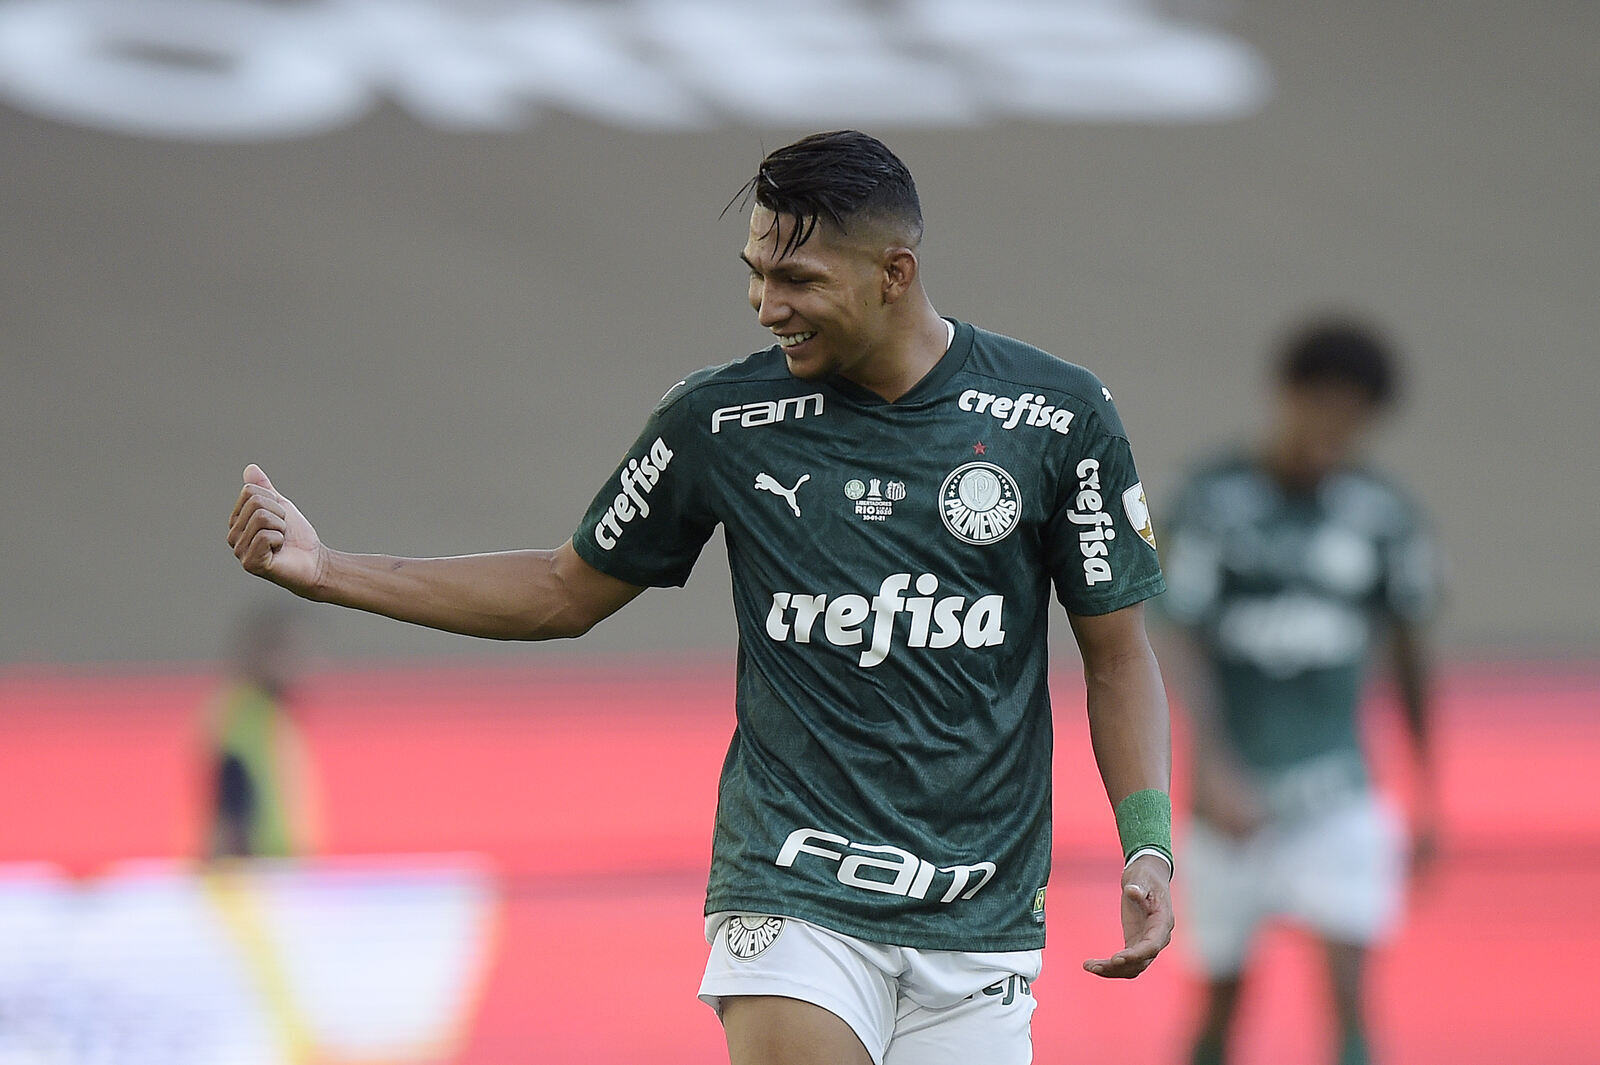 Campeão da Libertadores, Rony lembra da convicção de que faria história no Palmeiras